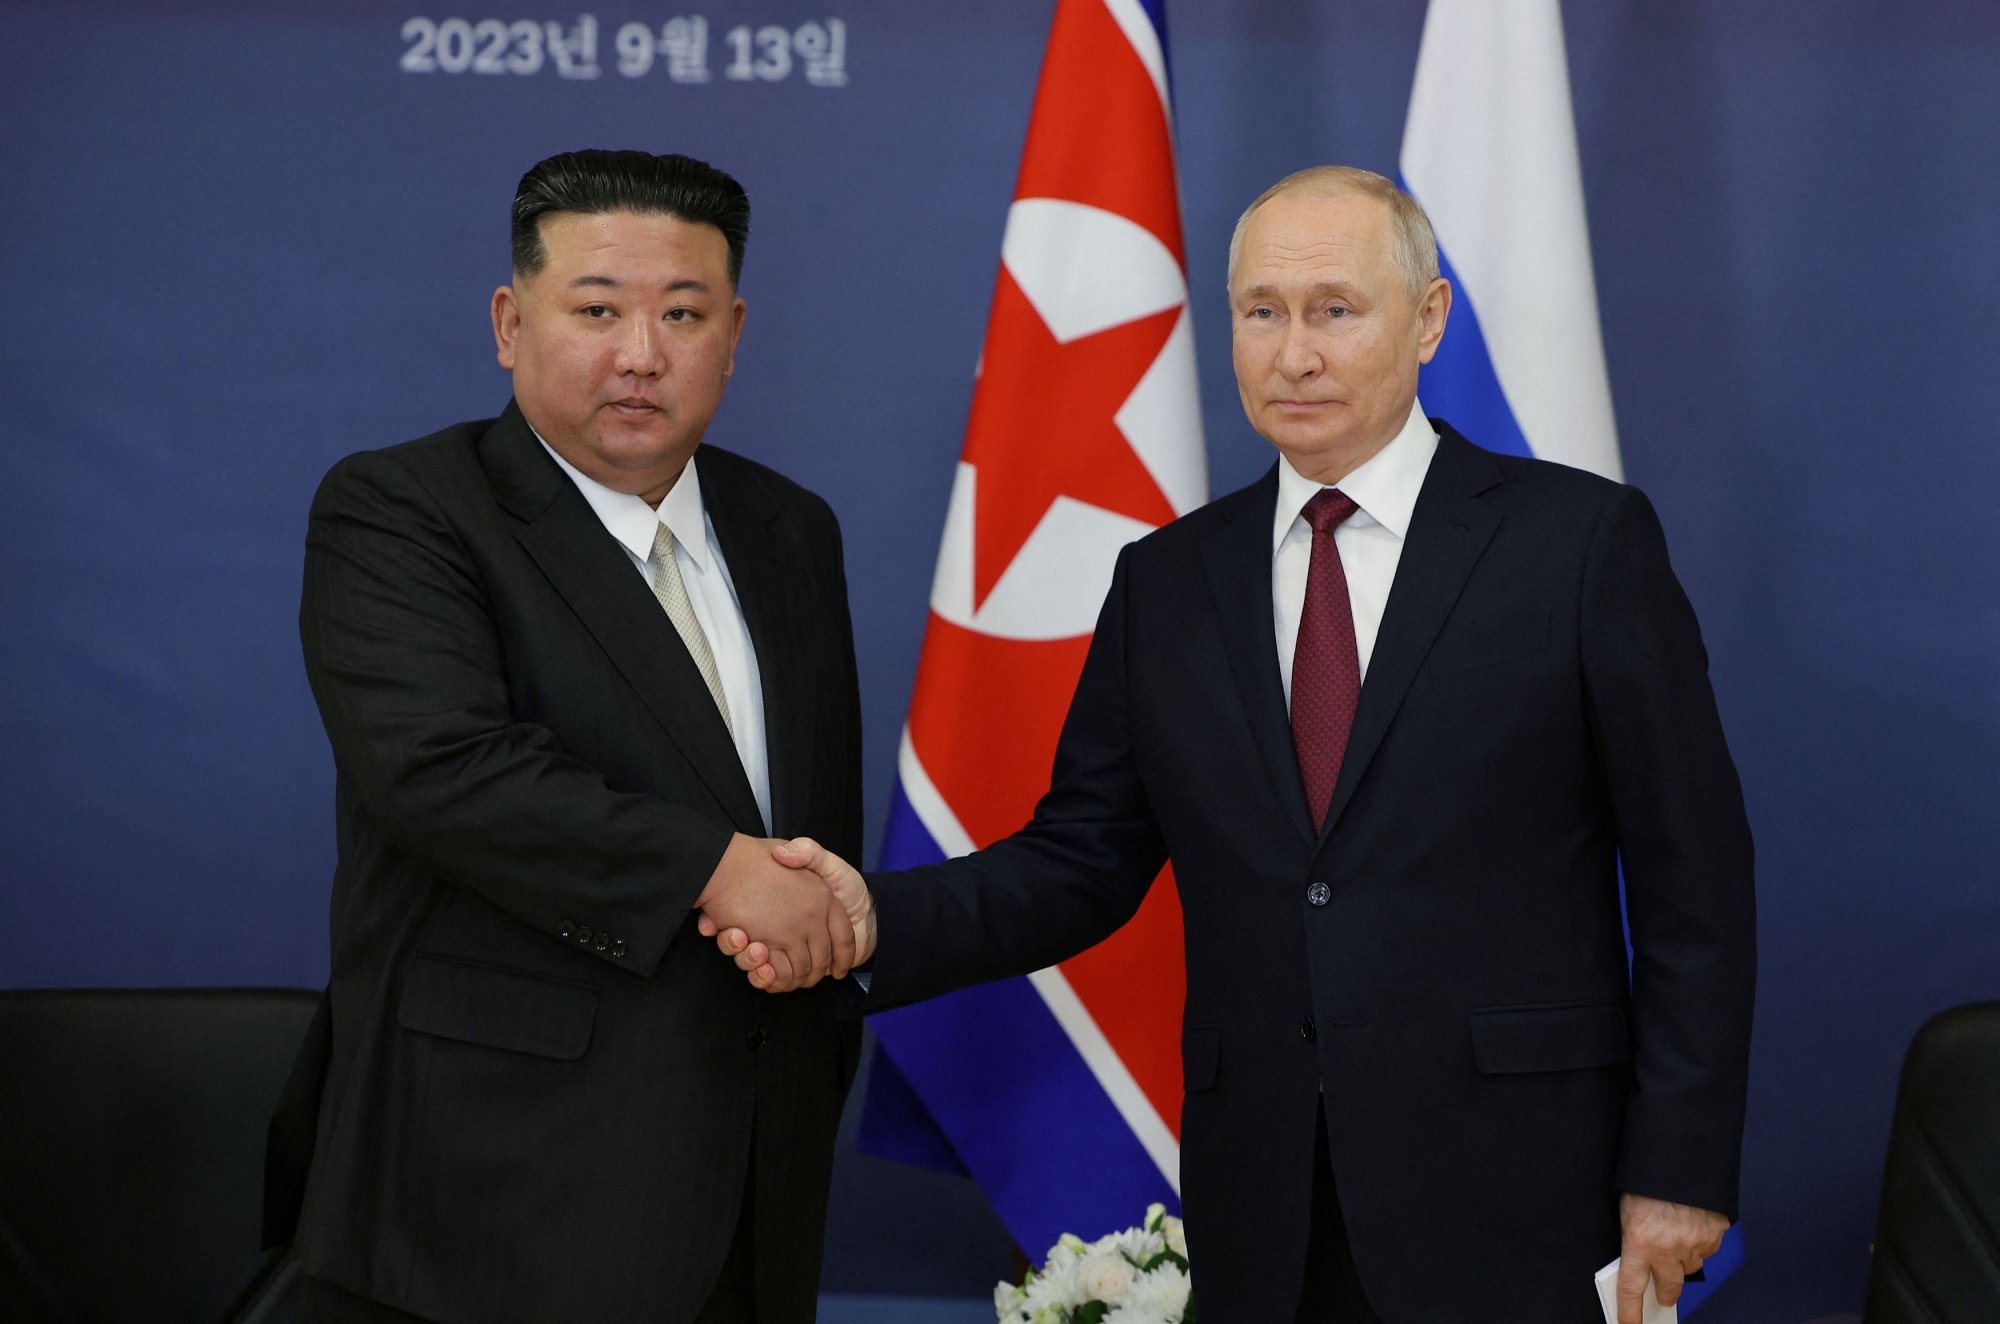 Αναβιώνουν οι φόβοι της Δύσης για τη συνεργασία μεταξύ Β.Κορέας και Ρωσίας - Τι δείχνουν δορυφορικές εικόνες